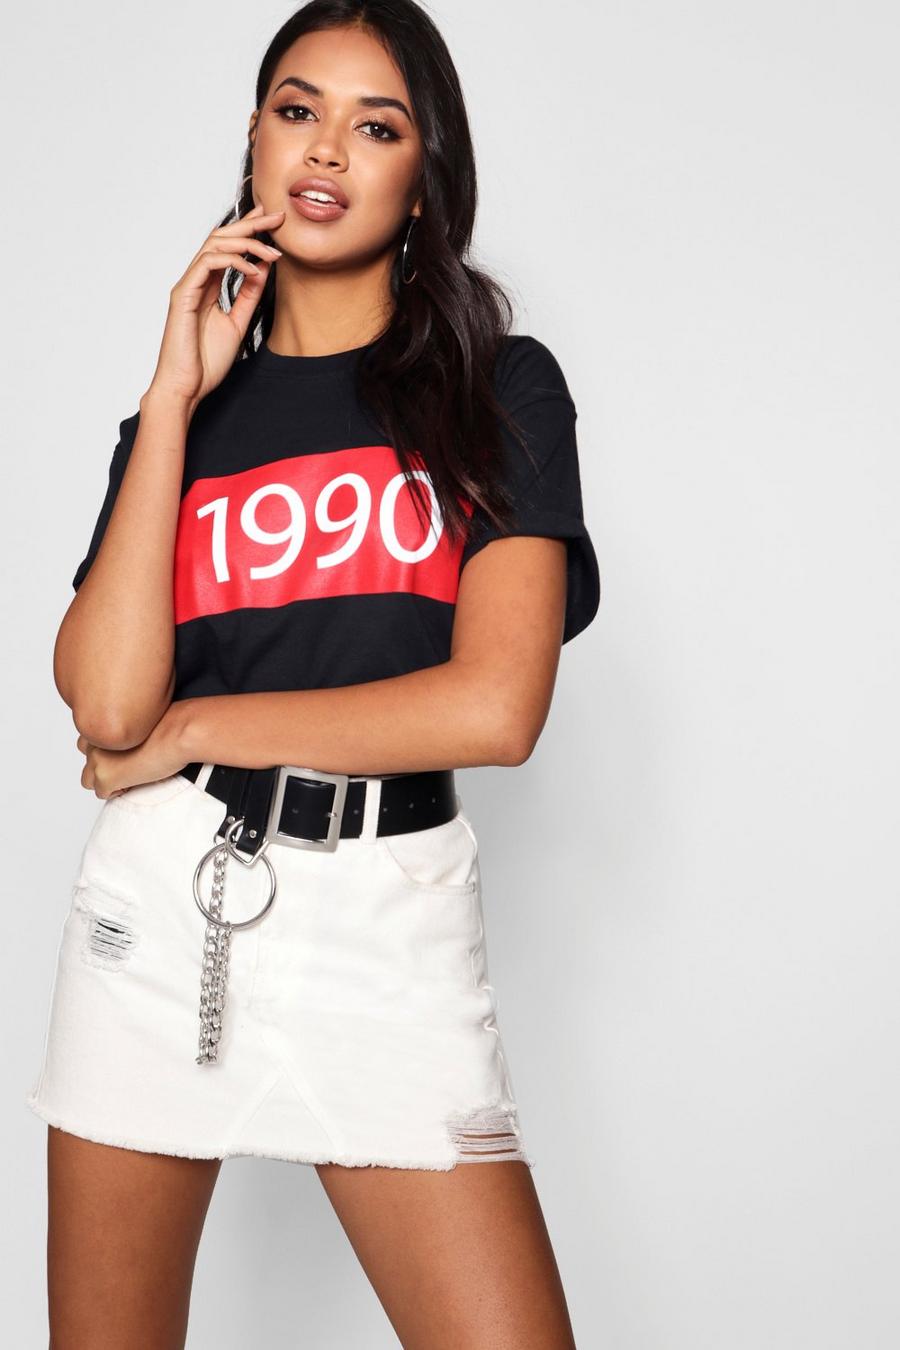 Camiseta con eslogan "1990" image number 1